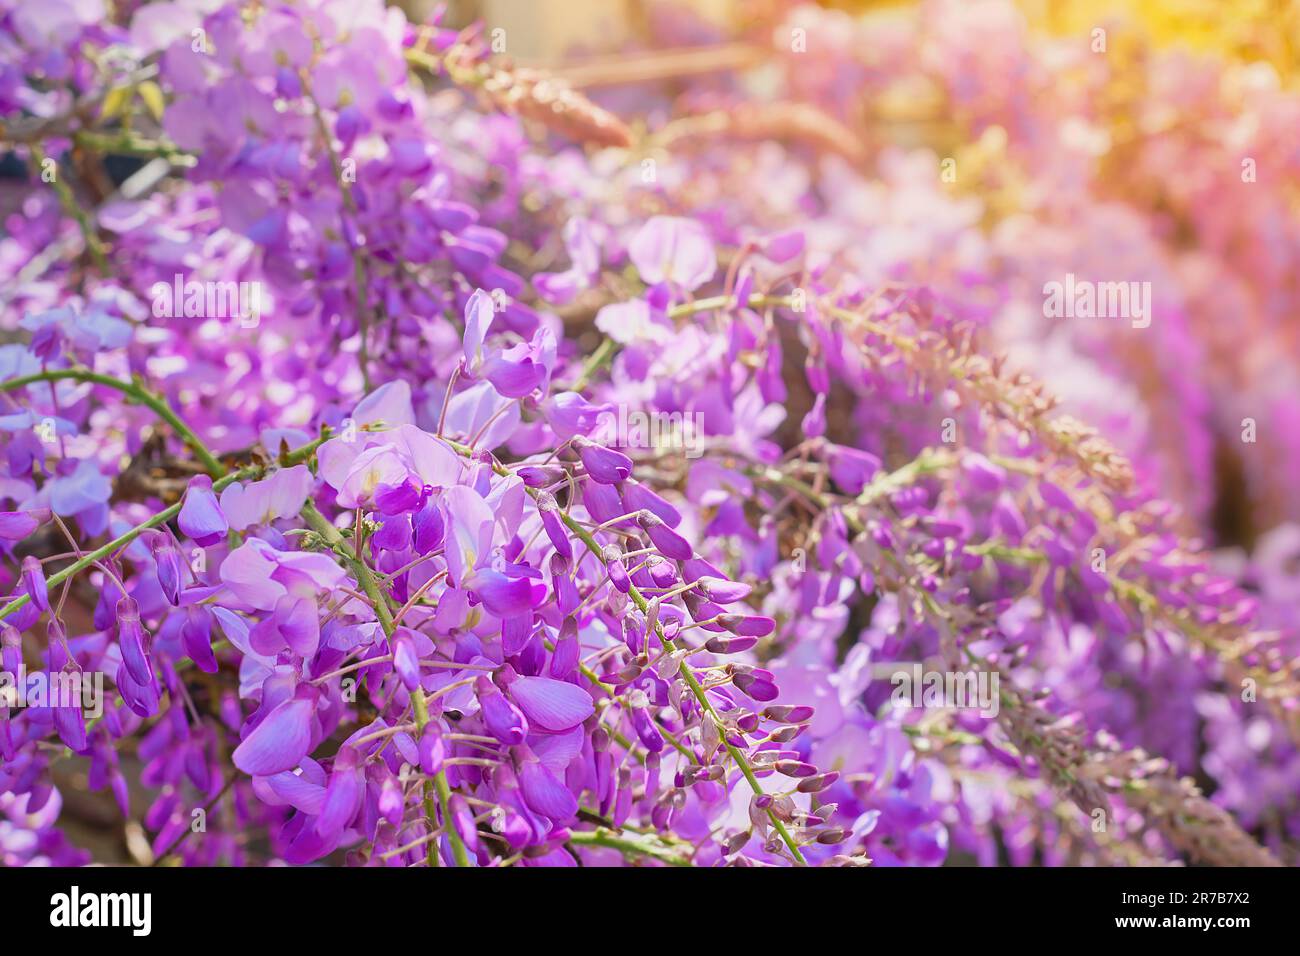 Wisteria Blumen Nahaufnahme in Hintergrundlicht, sanfter, selektiver Fokus, Idee für einen Hintergrund oder eine Postkarte, Frühlingsreisen ins mittelmeer. Stockfoto